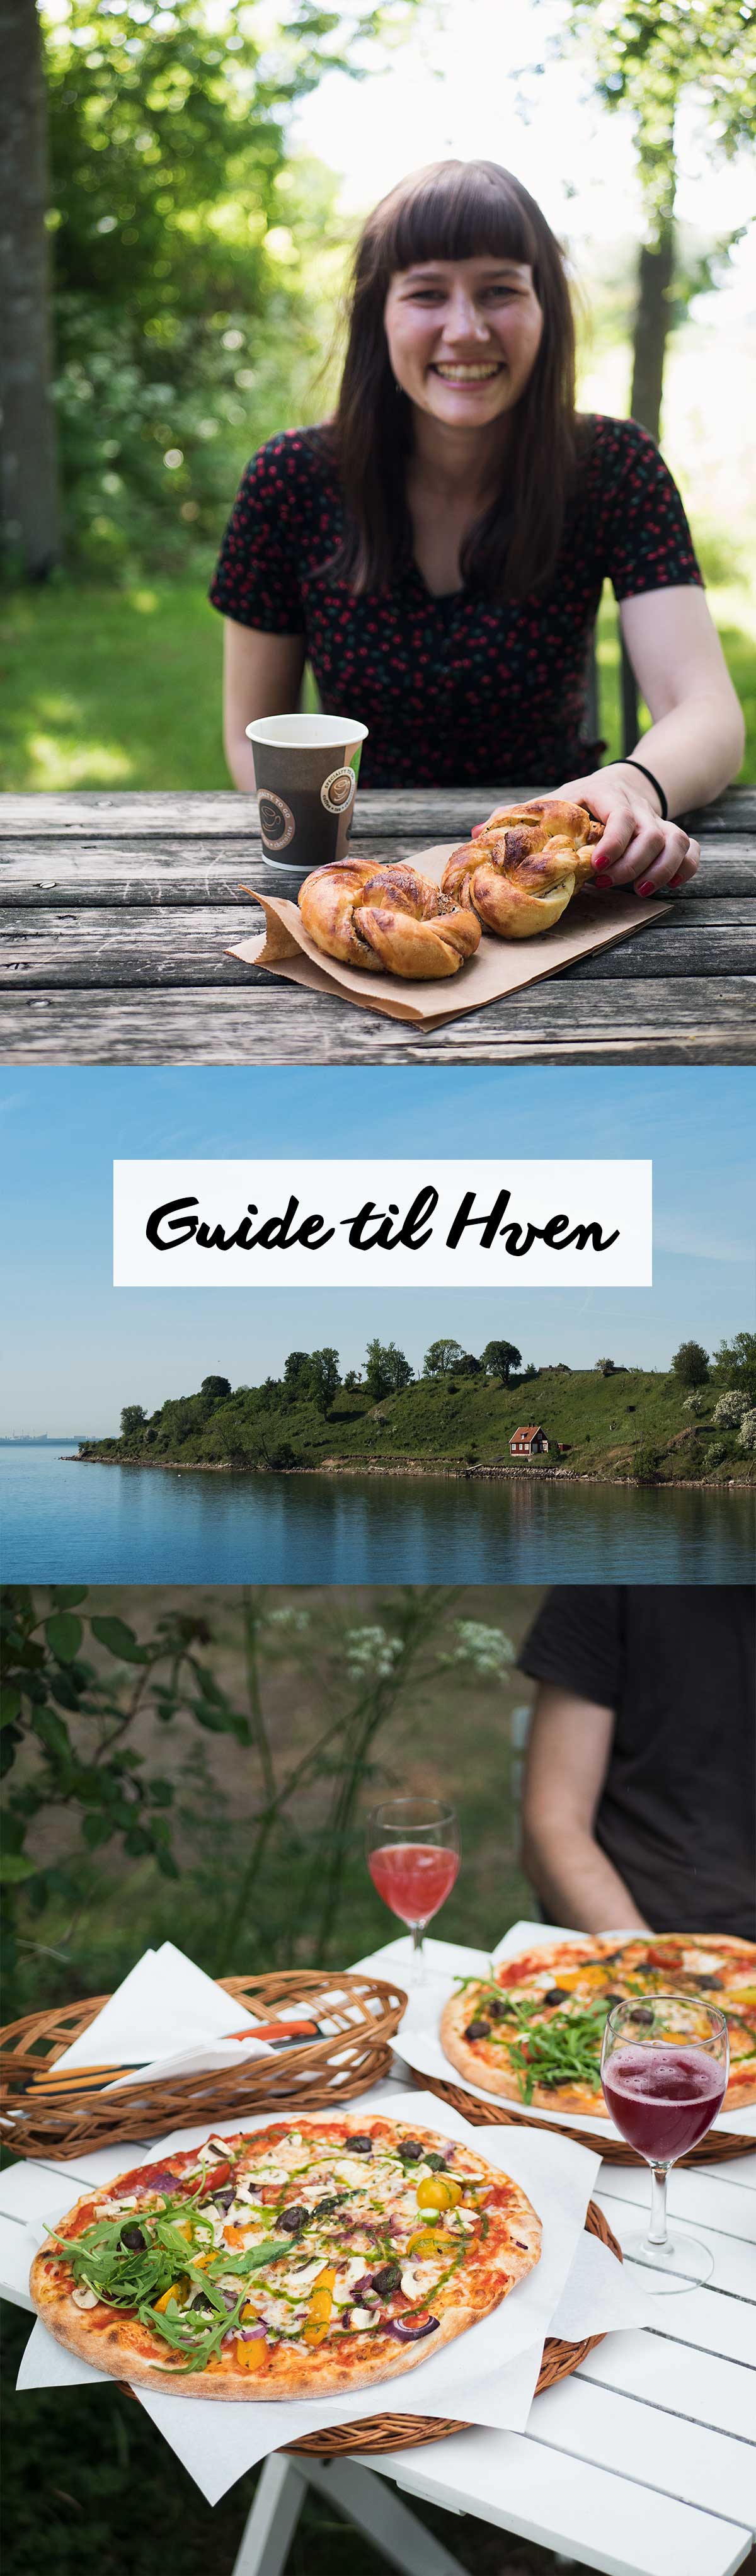 Guide til Hven | Frk. Kræsen